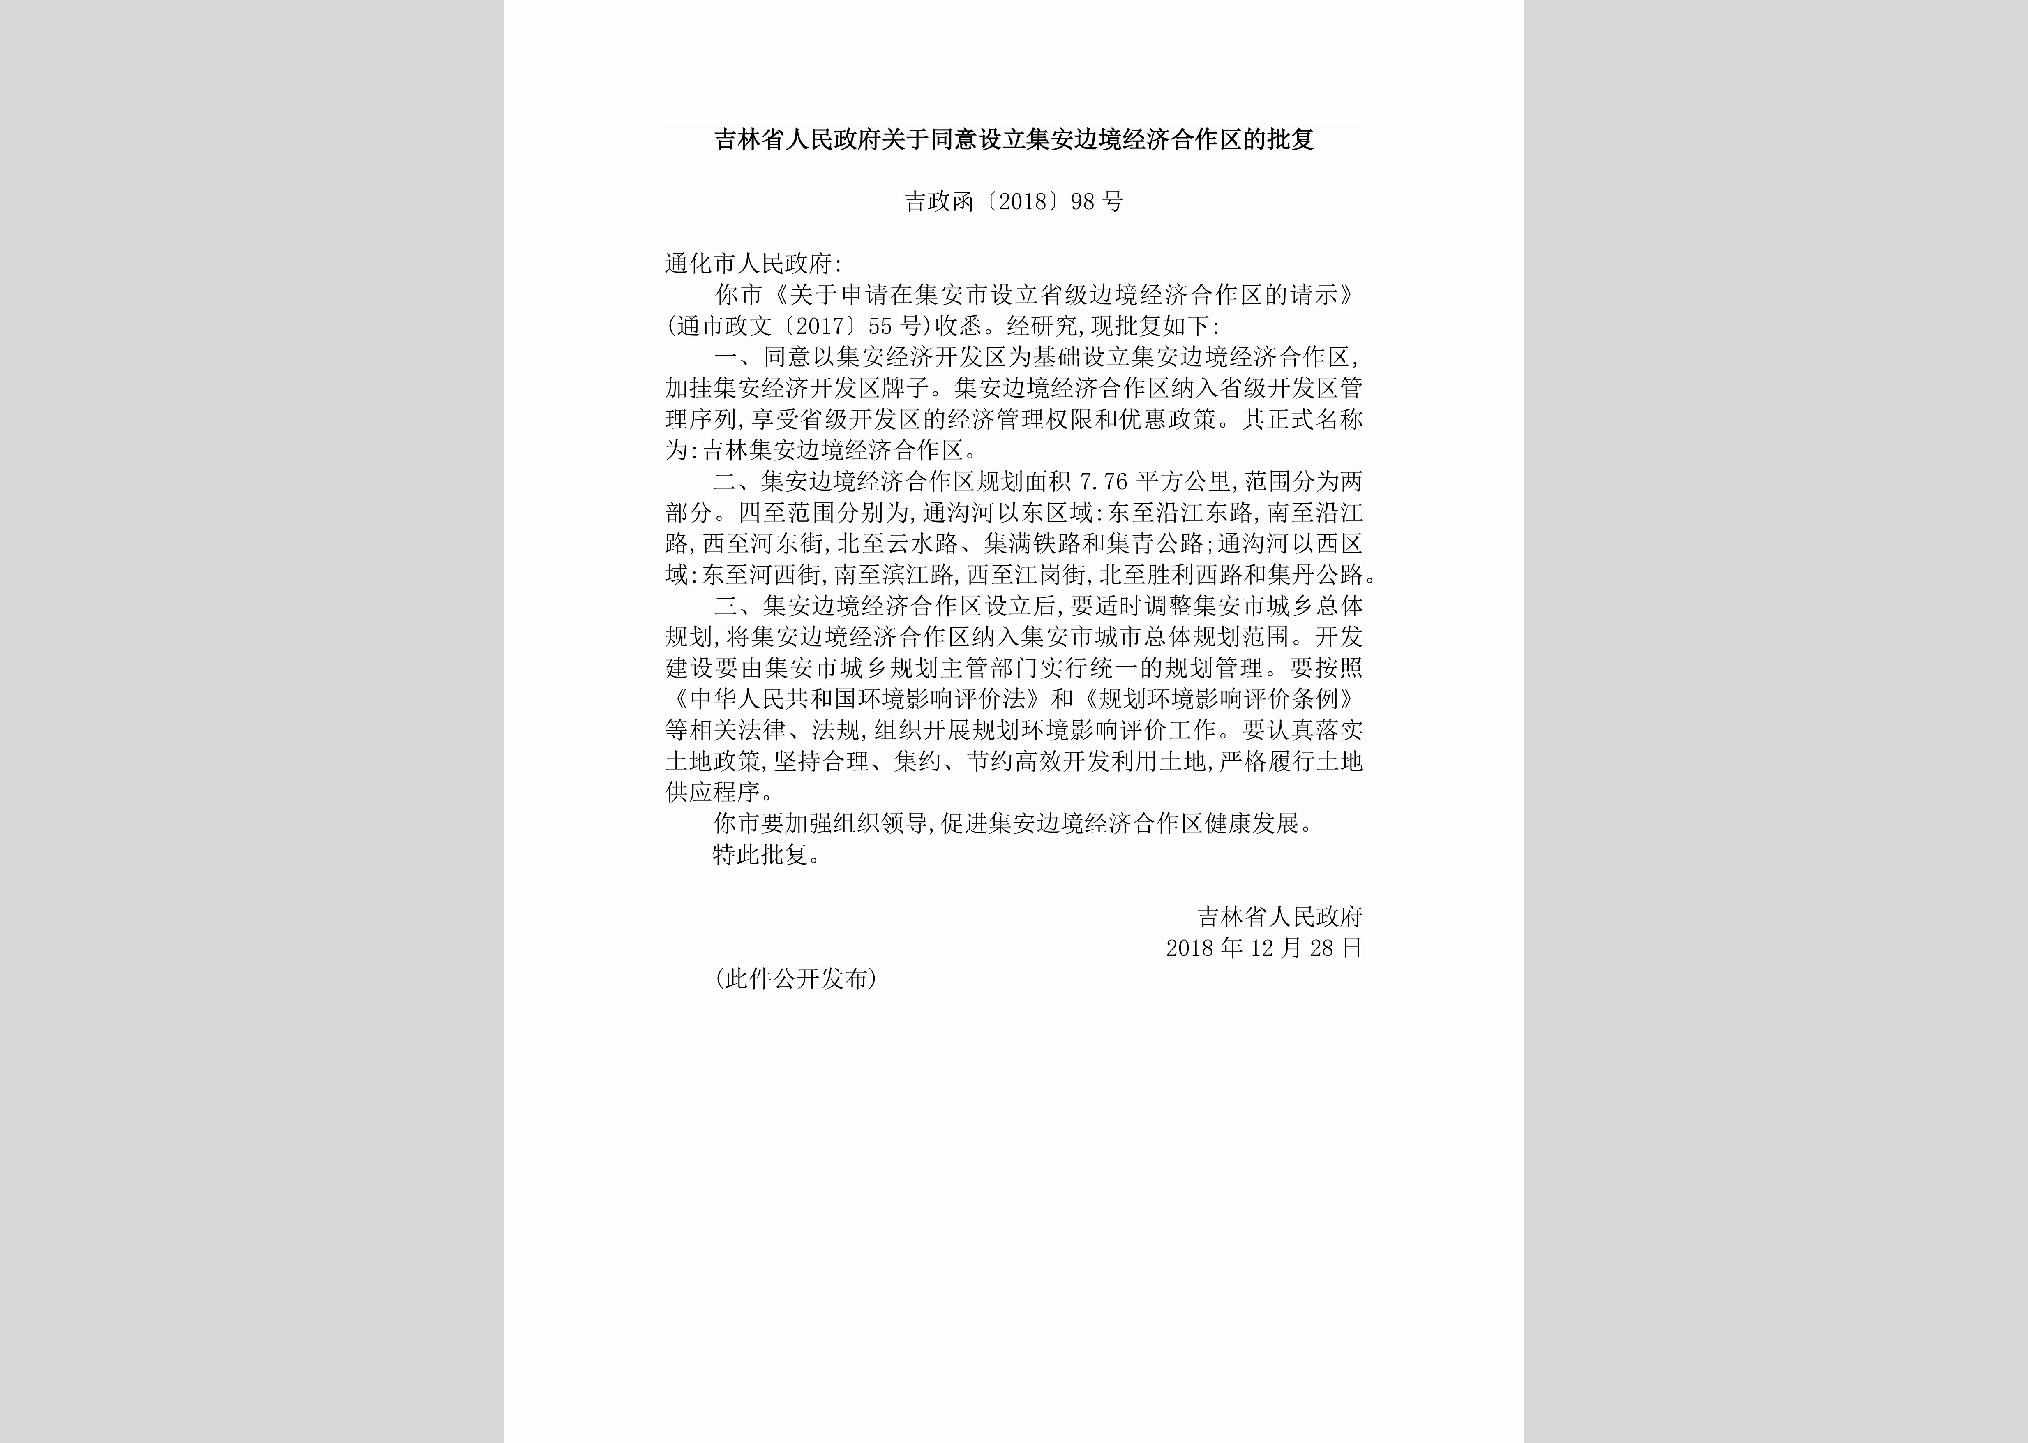 吉政函[2018]98号：吉林省人民政府关于同意设立集安边境经济合作区的批复（吉政函〔2018〕98号）